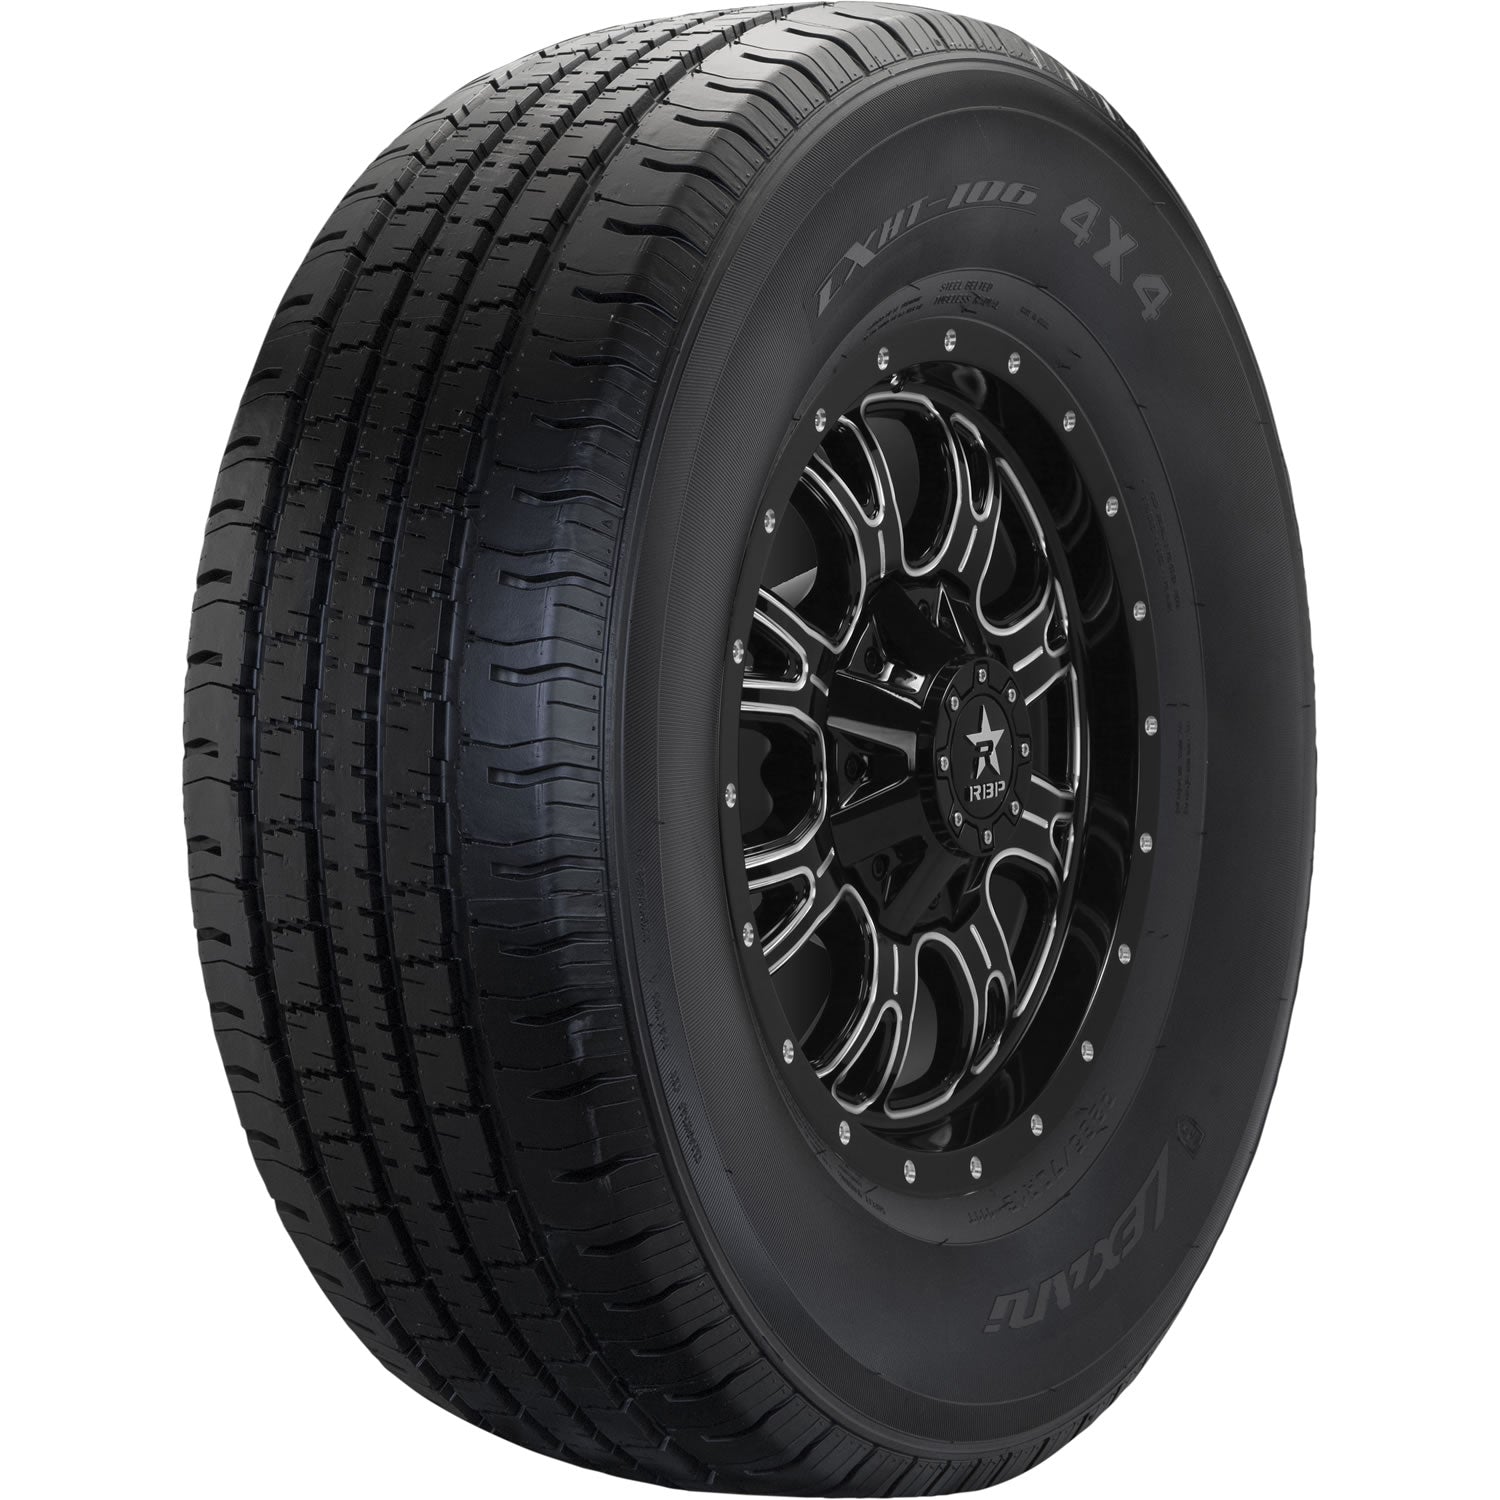 LEXANI LXHT-106 P235/75R15 (28.9X9.3R 15) Tires